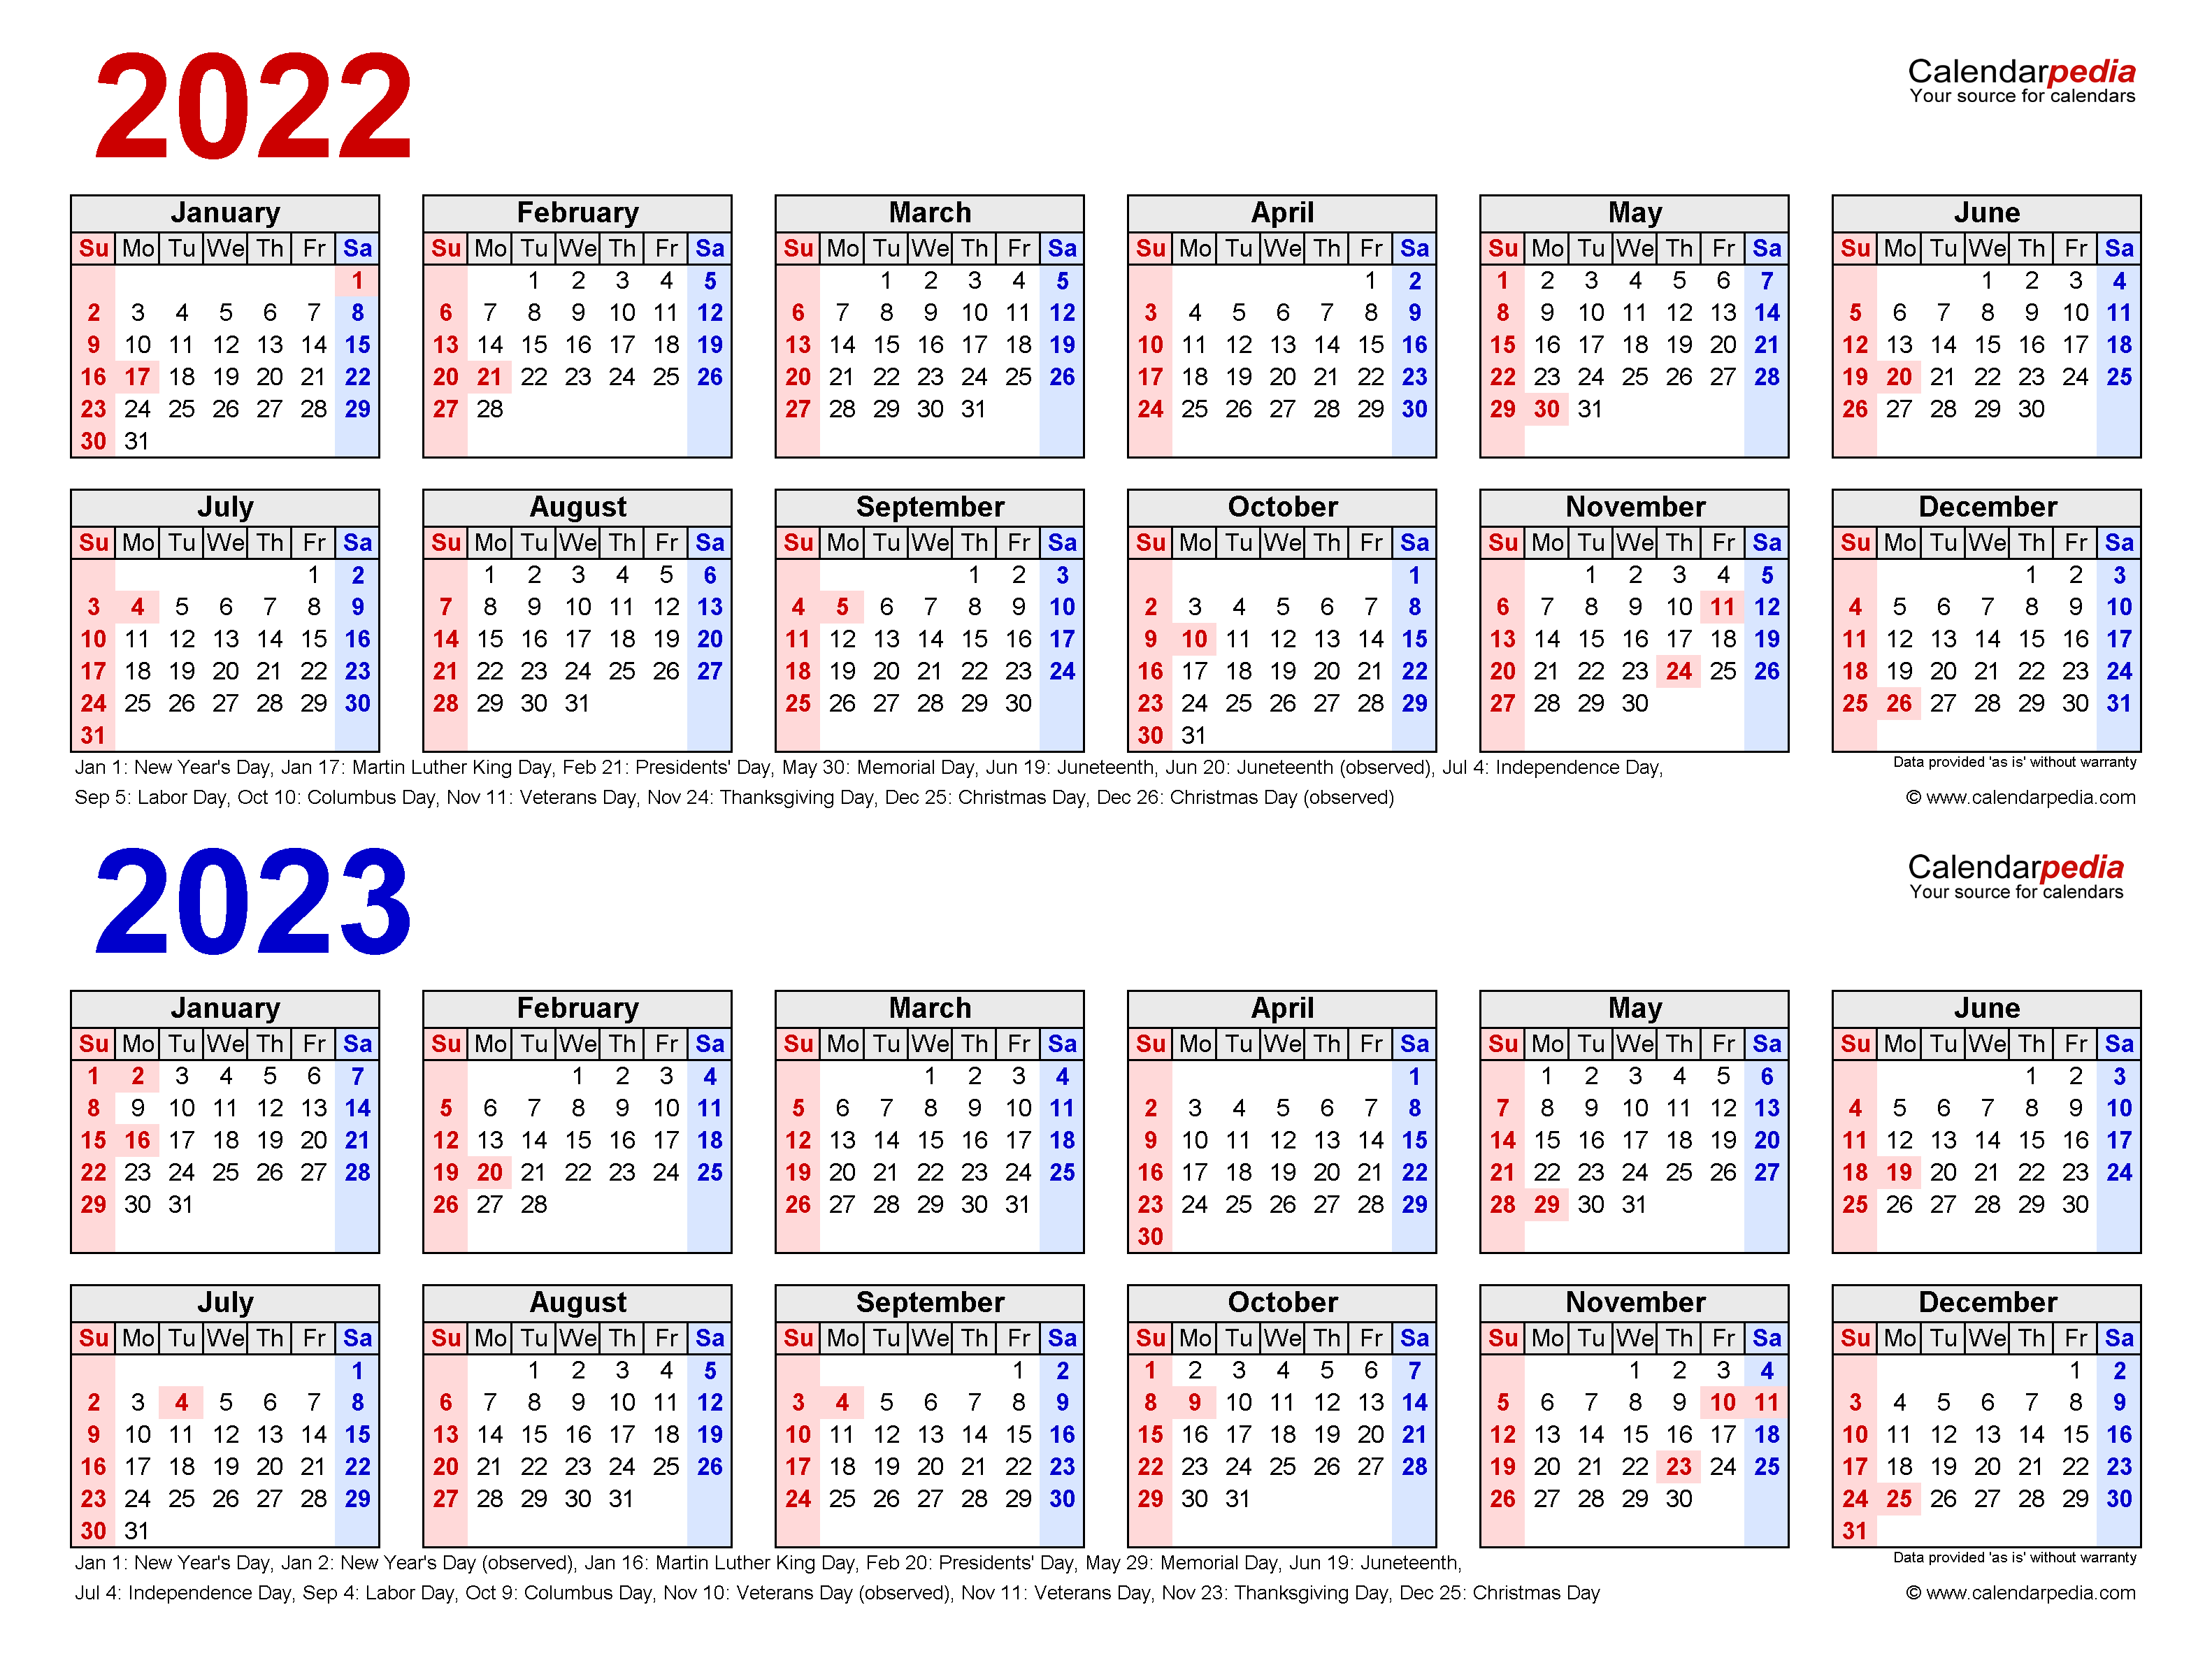 binghamton-university-2023-calendar-printable-calendar-2023